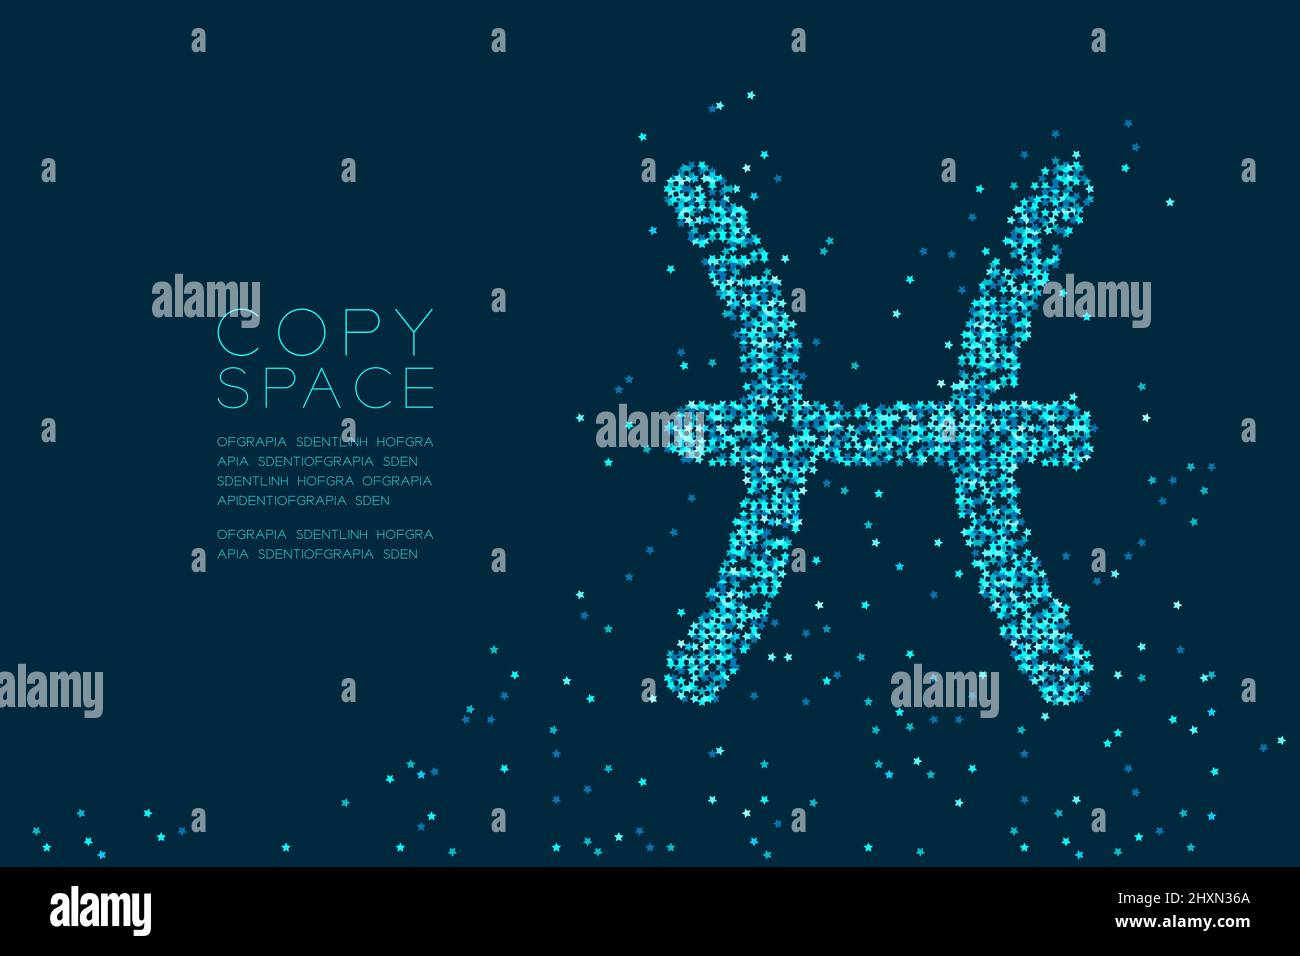 Résumé motif étoile poissons forme de signe zodiaque, constellation d'étoiles concept design bleu illustration isolée sur fond bleu foncé avec copie s. Illustration de Vecteur